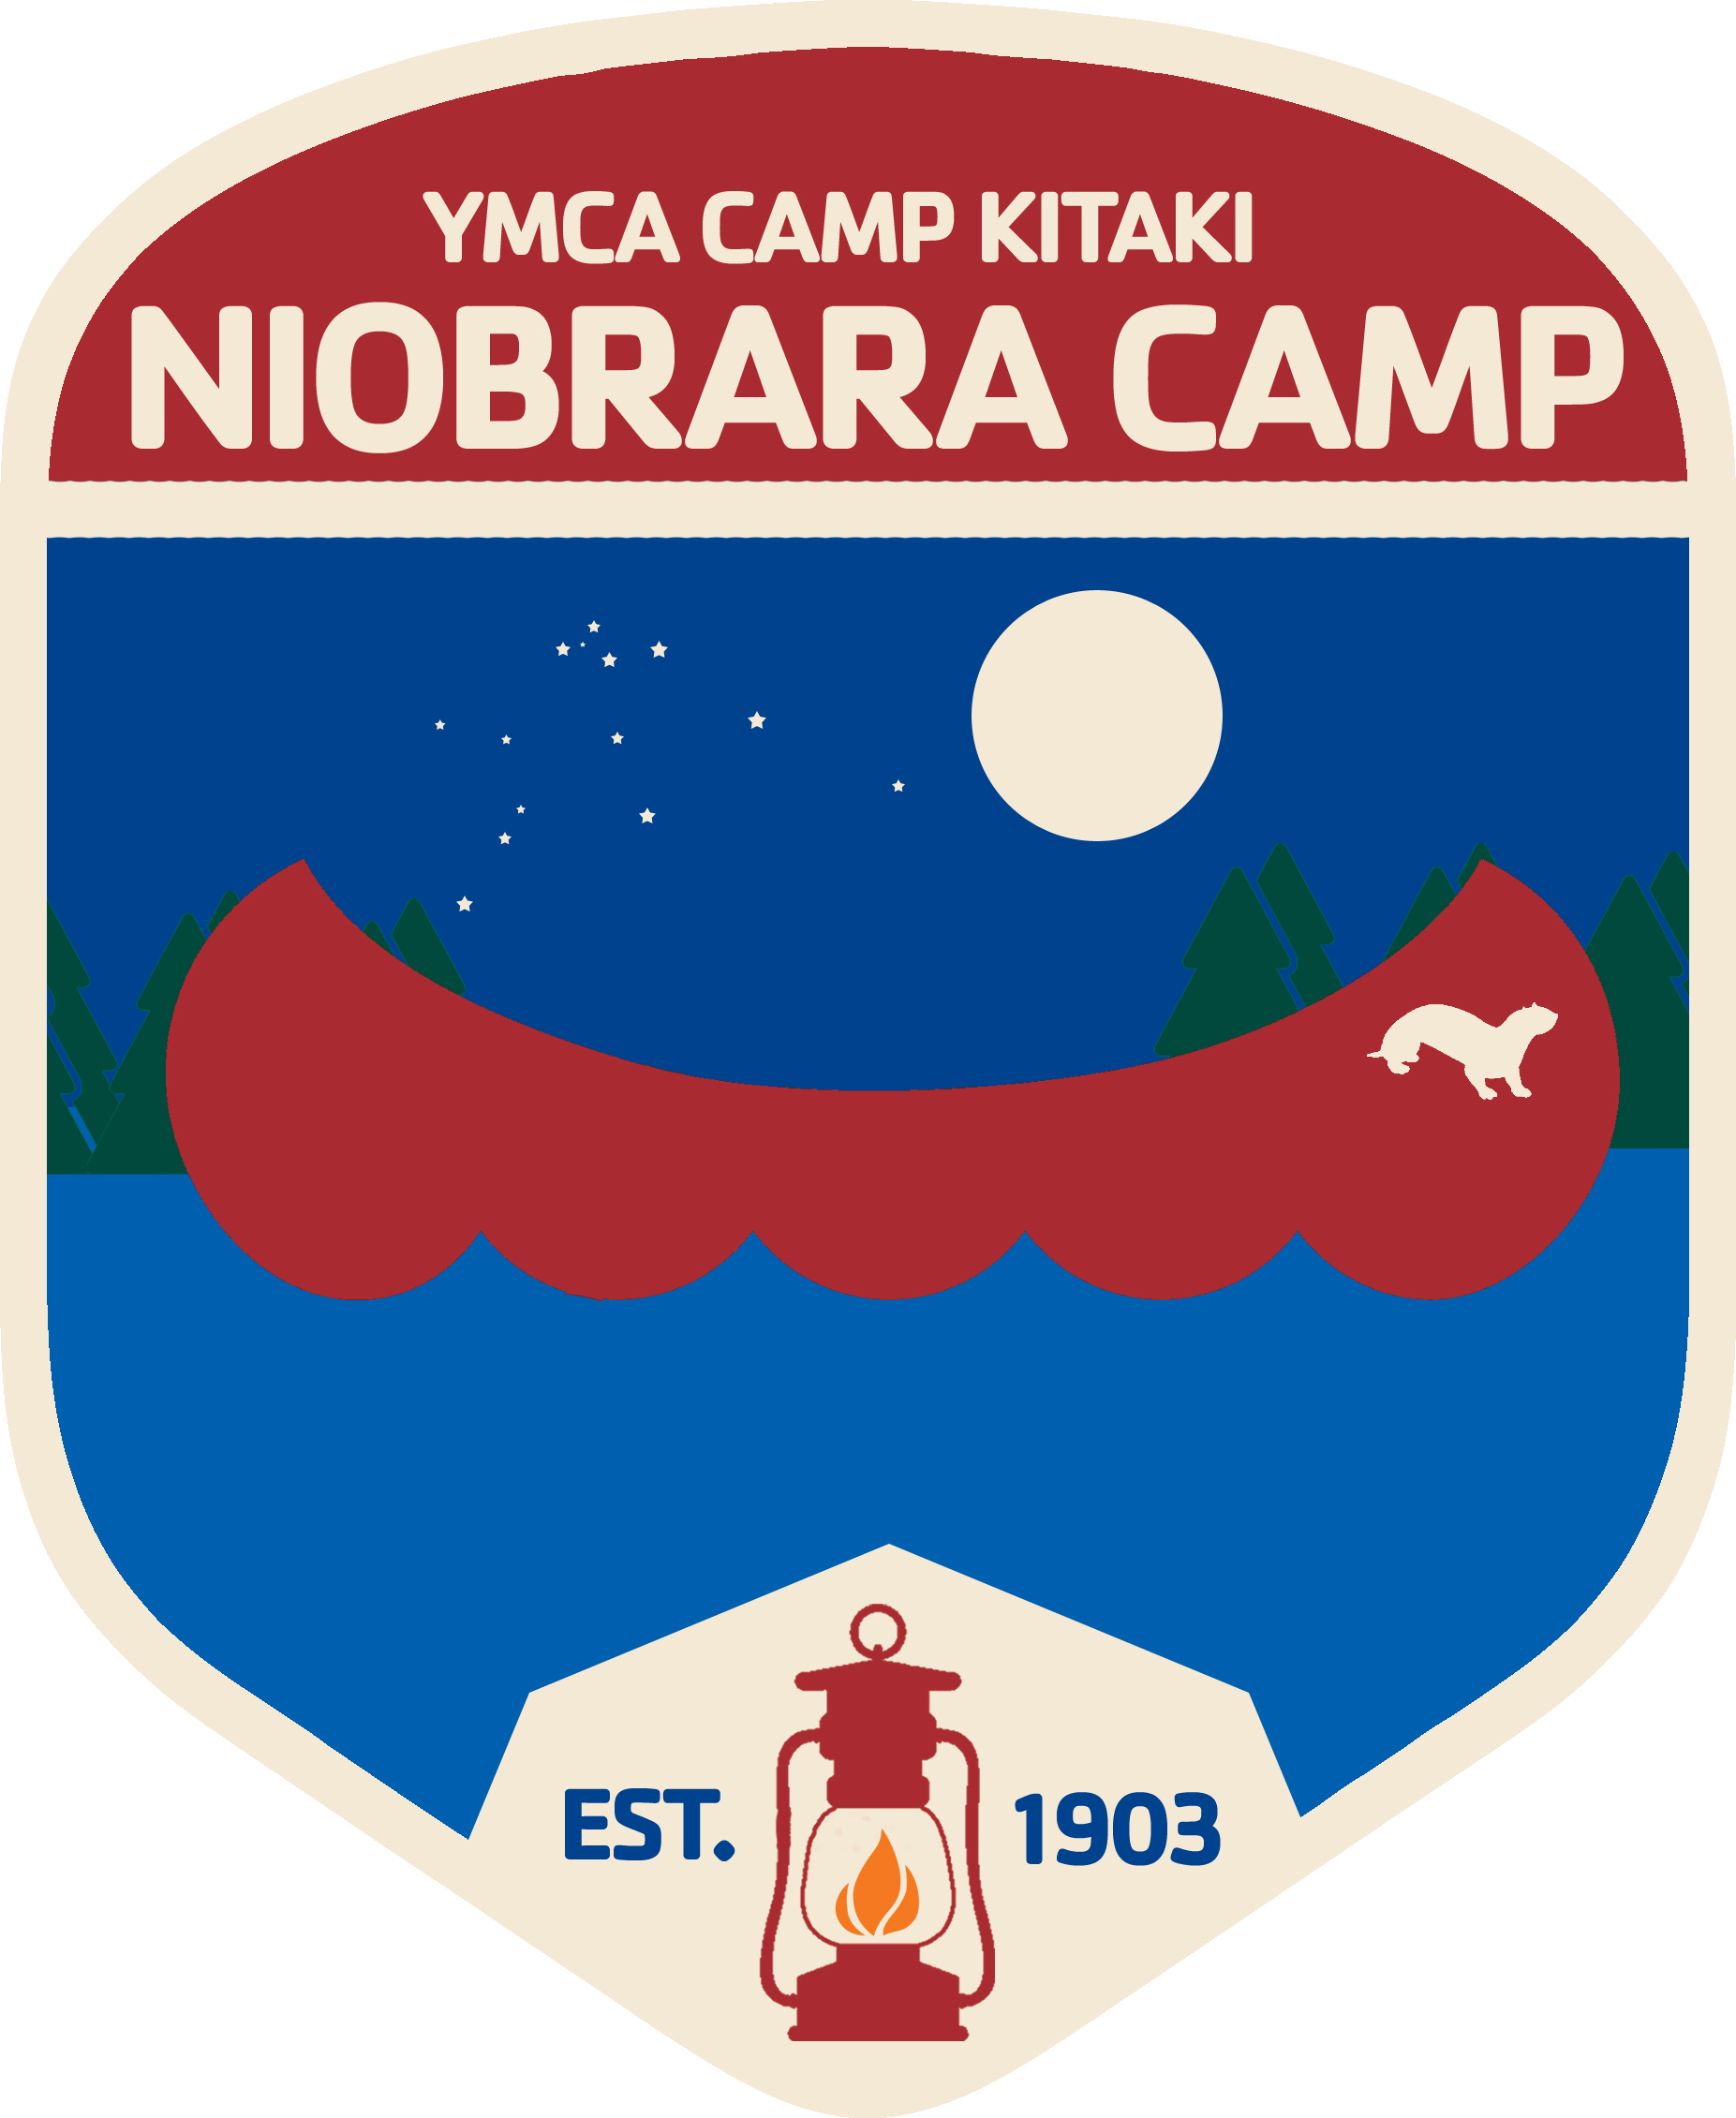 A program badge for Niobrara Camp